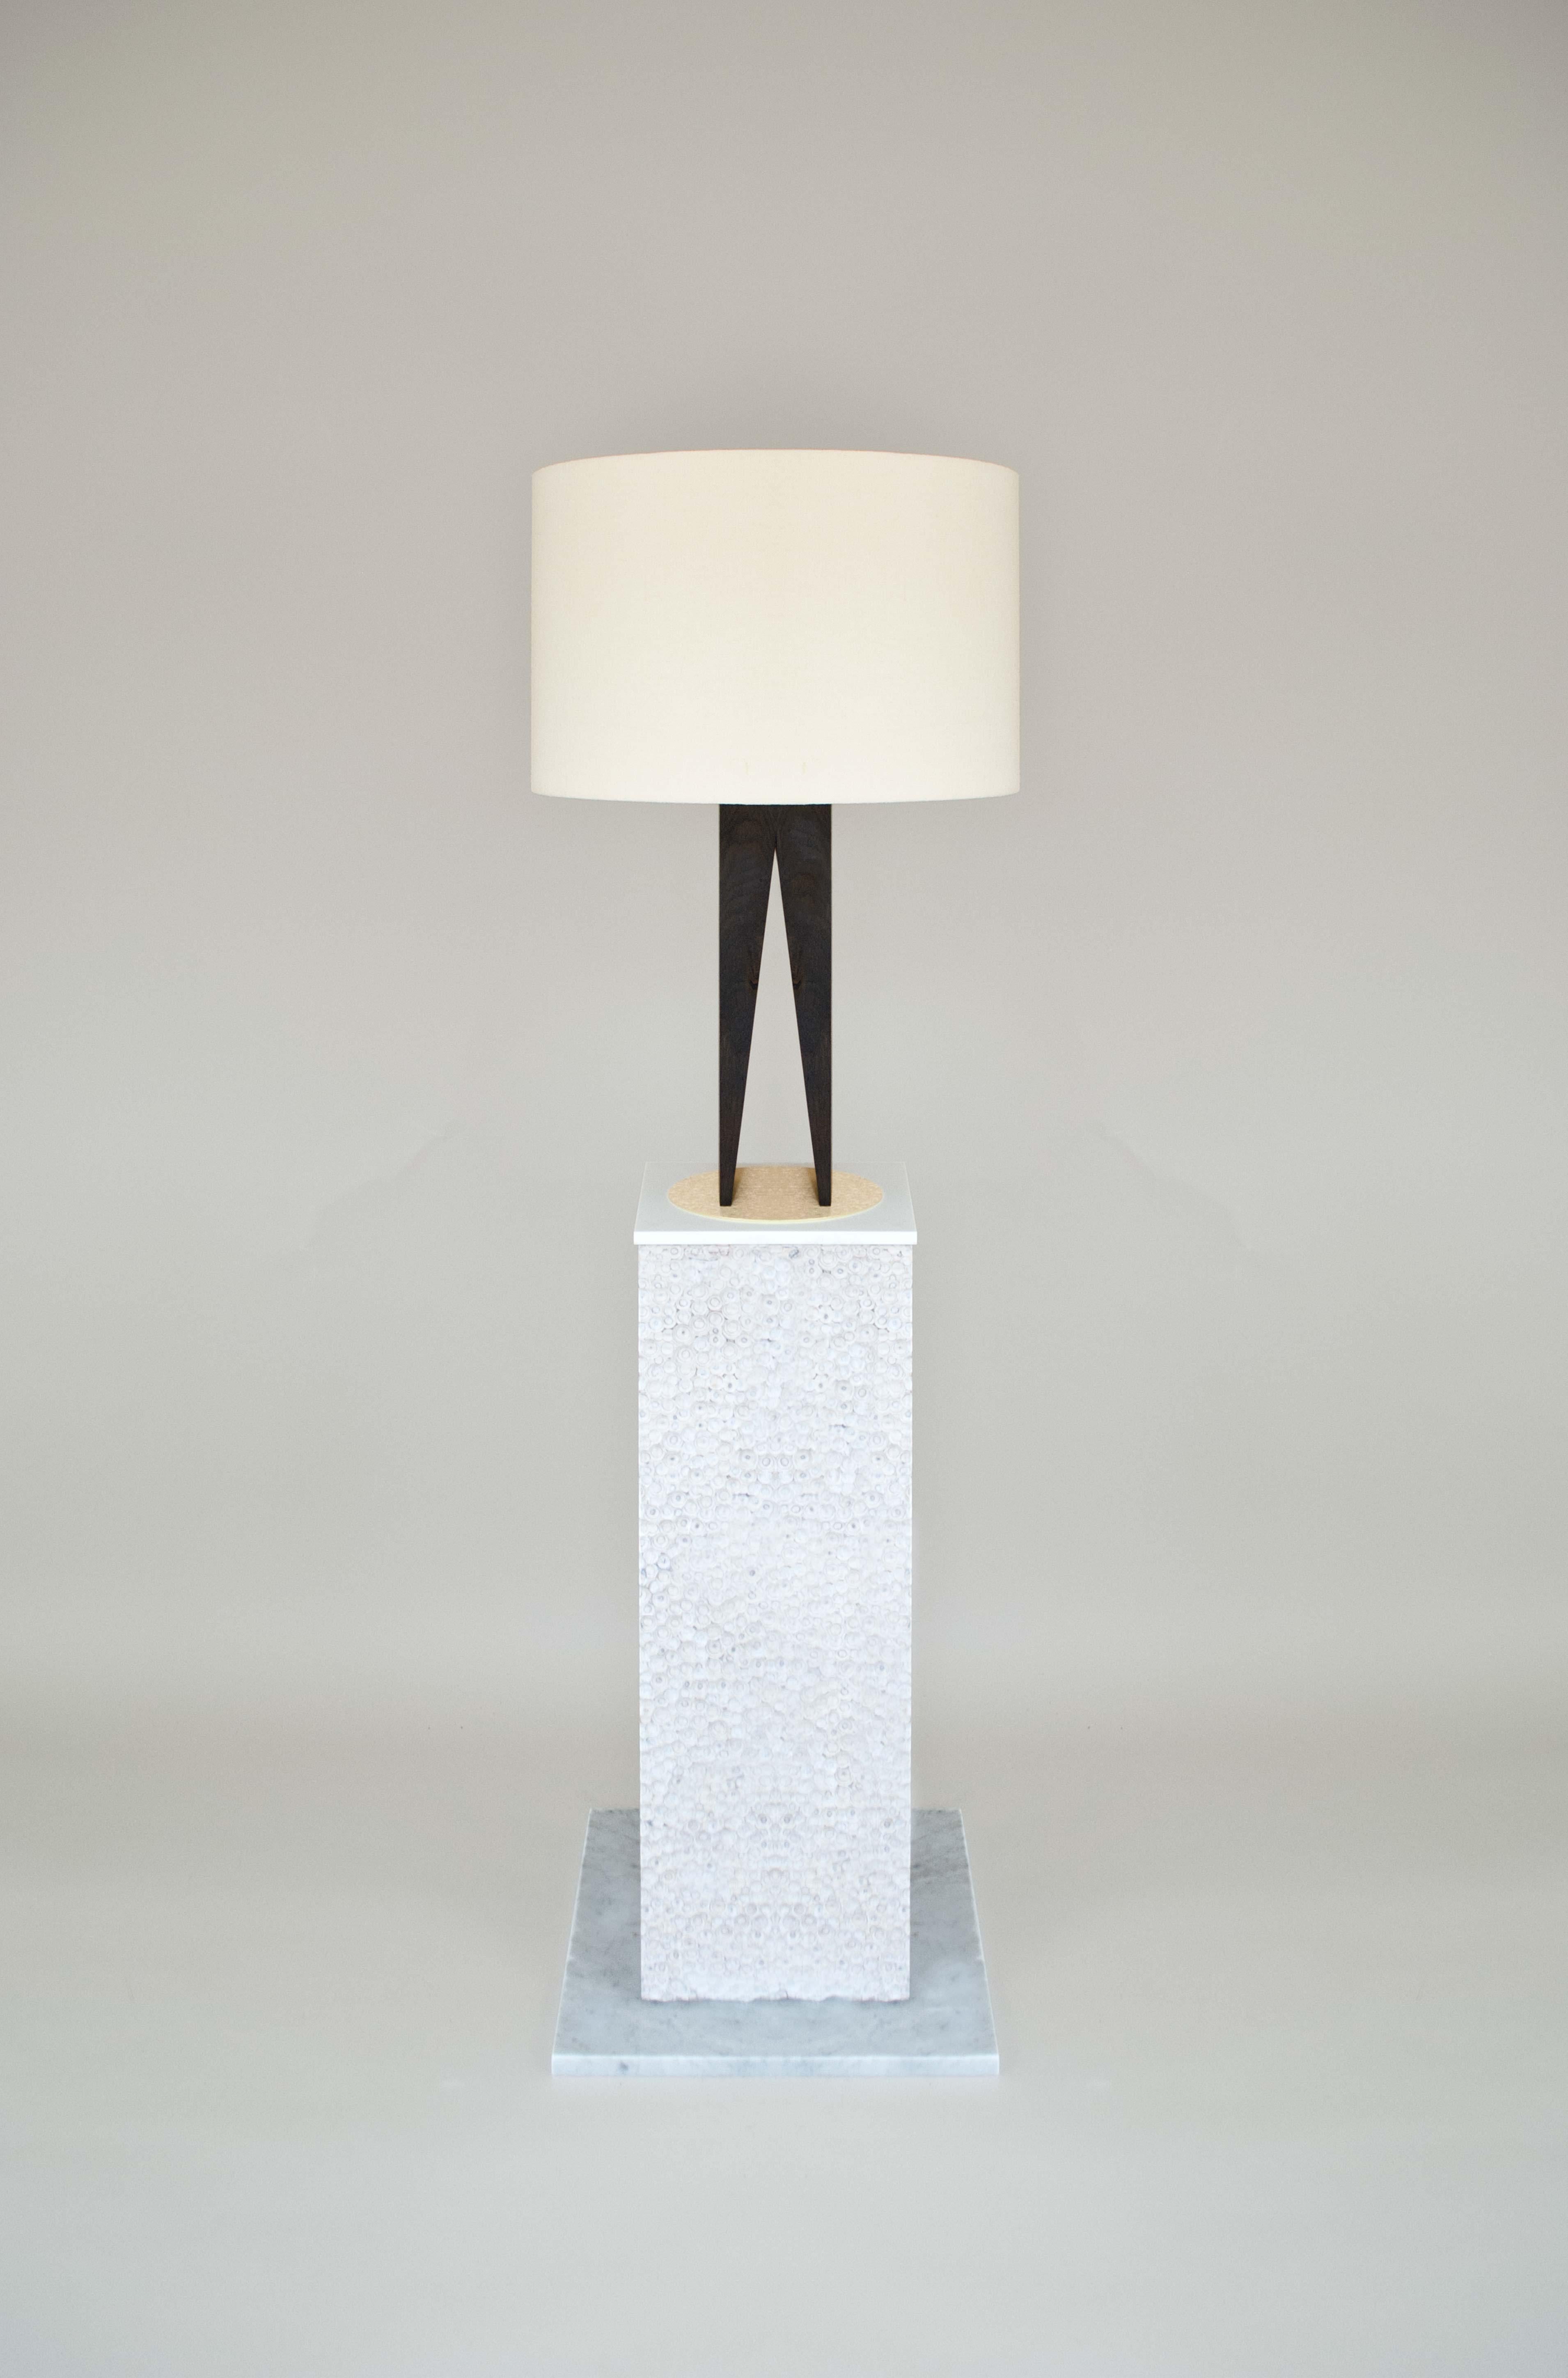 La lampe V s'inspire du Bauhaus et du design Art Déco. Elle est composée d'un pied en chêne massif, ébonisé et monté sur une plaque de base en laiton. L'abat-jour est fabriqué à partir d'un lin brut texturé provenant d'Italie. 

La lampe « V » est